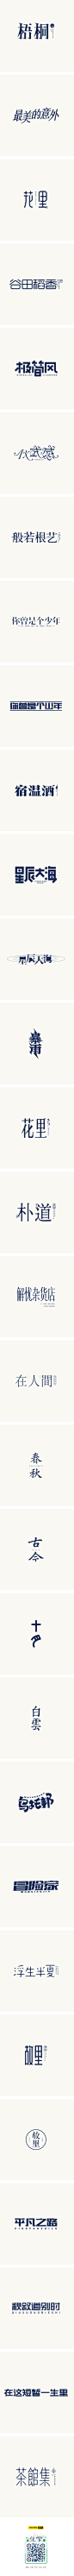 北故|字体设计整理（1）-字体传奇网-中国首个字体品牌设计师交流网_（精选）中文字体设计推荐 _海报_字体设计采下来 #率叶插件，让花瓣网更好用#